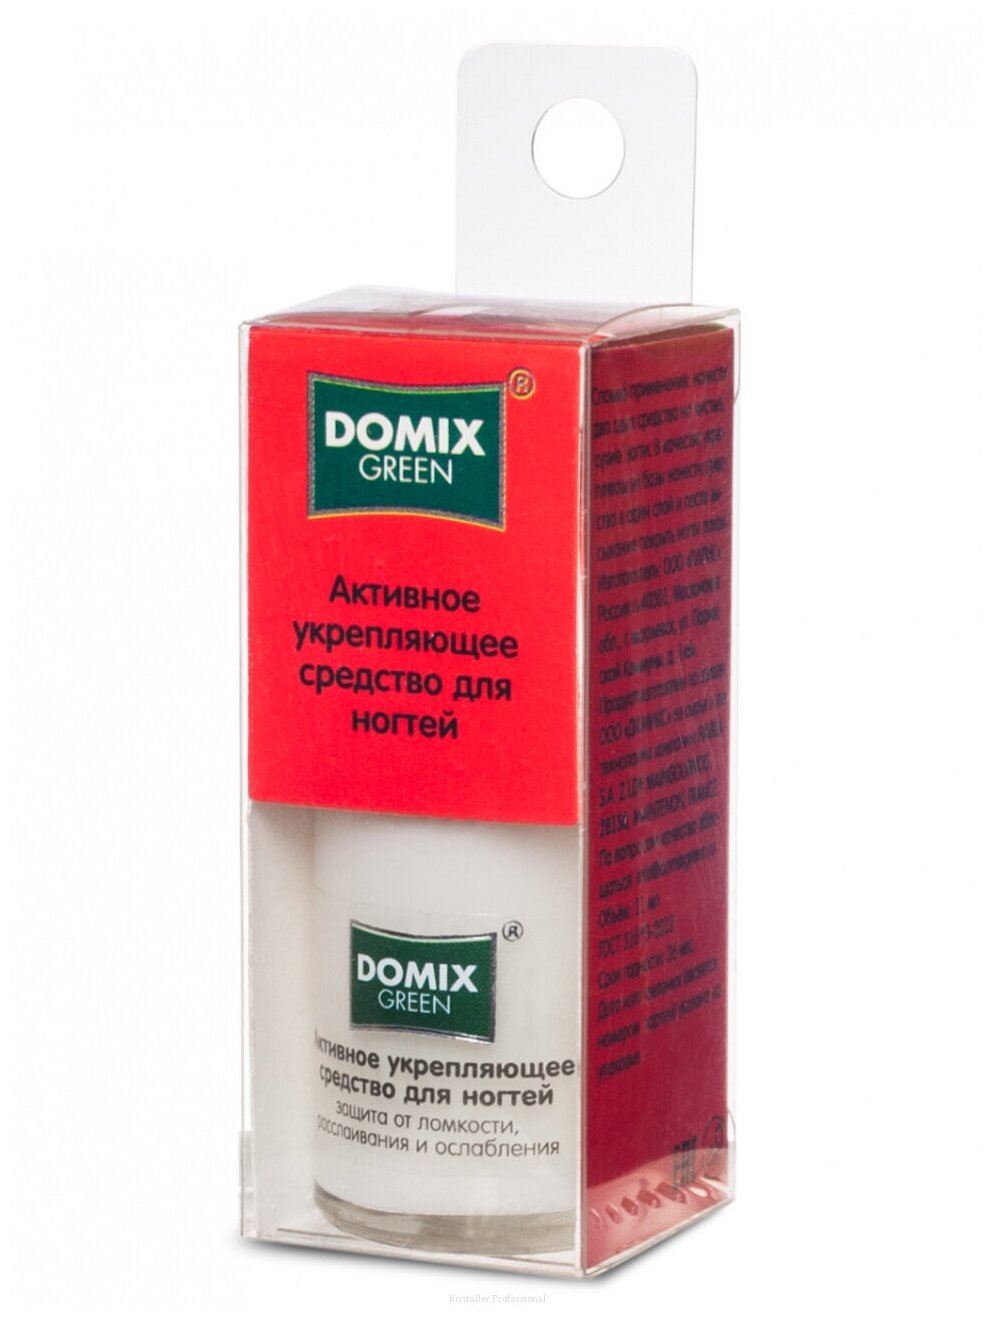 Domix Активное укрепляющее средство для ногтей, 11 мл